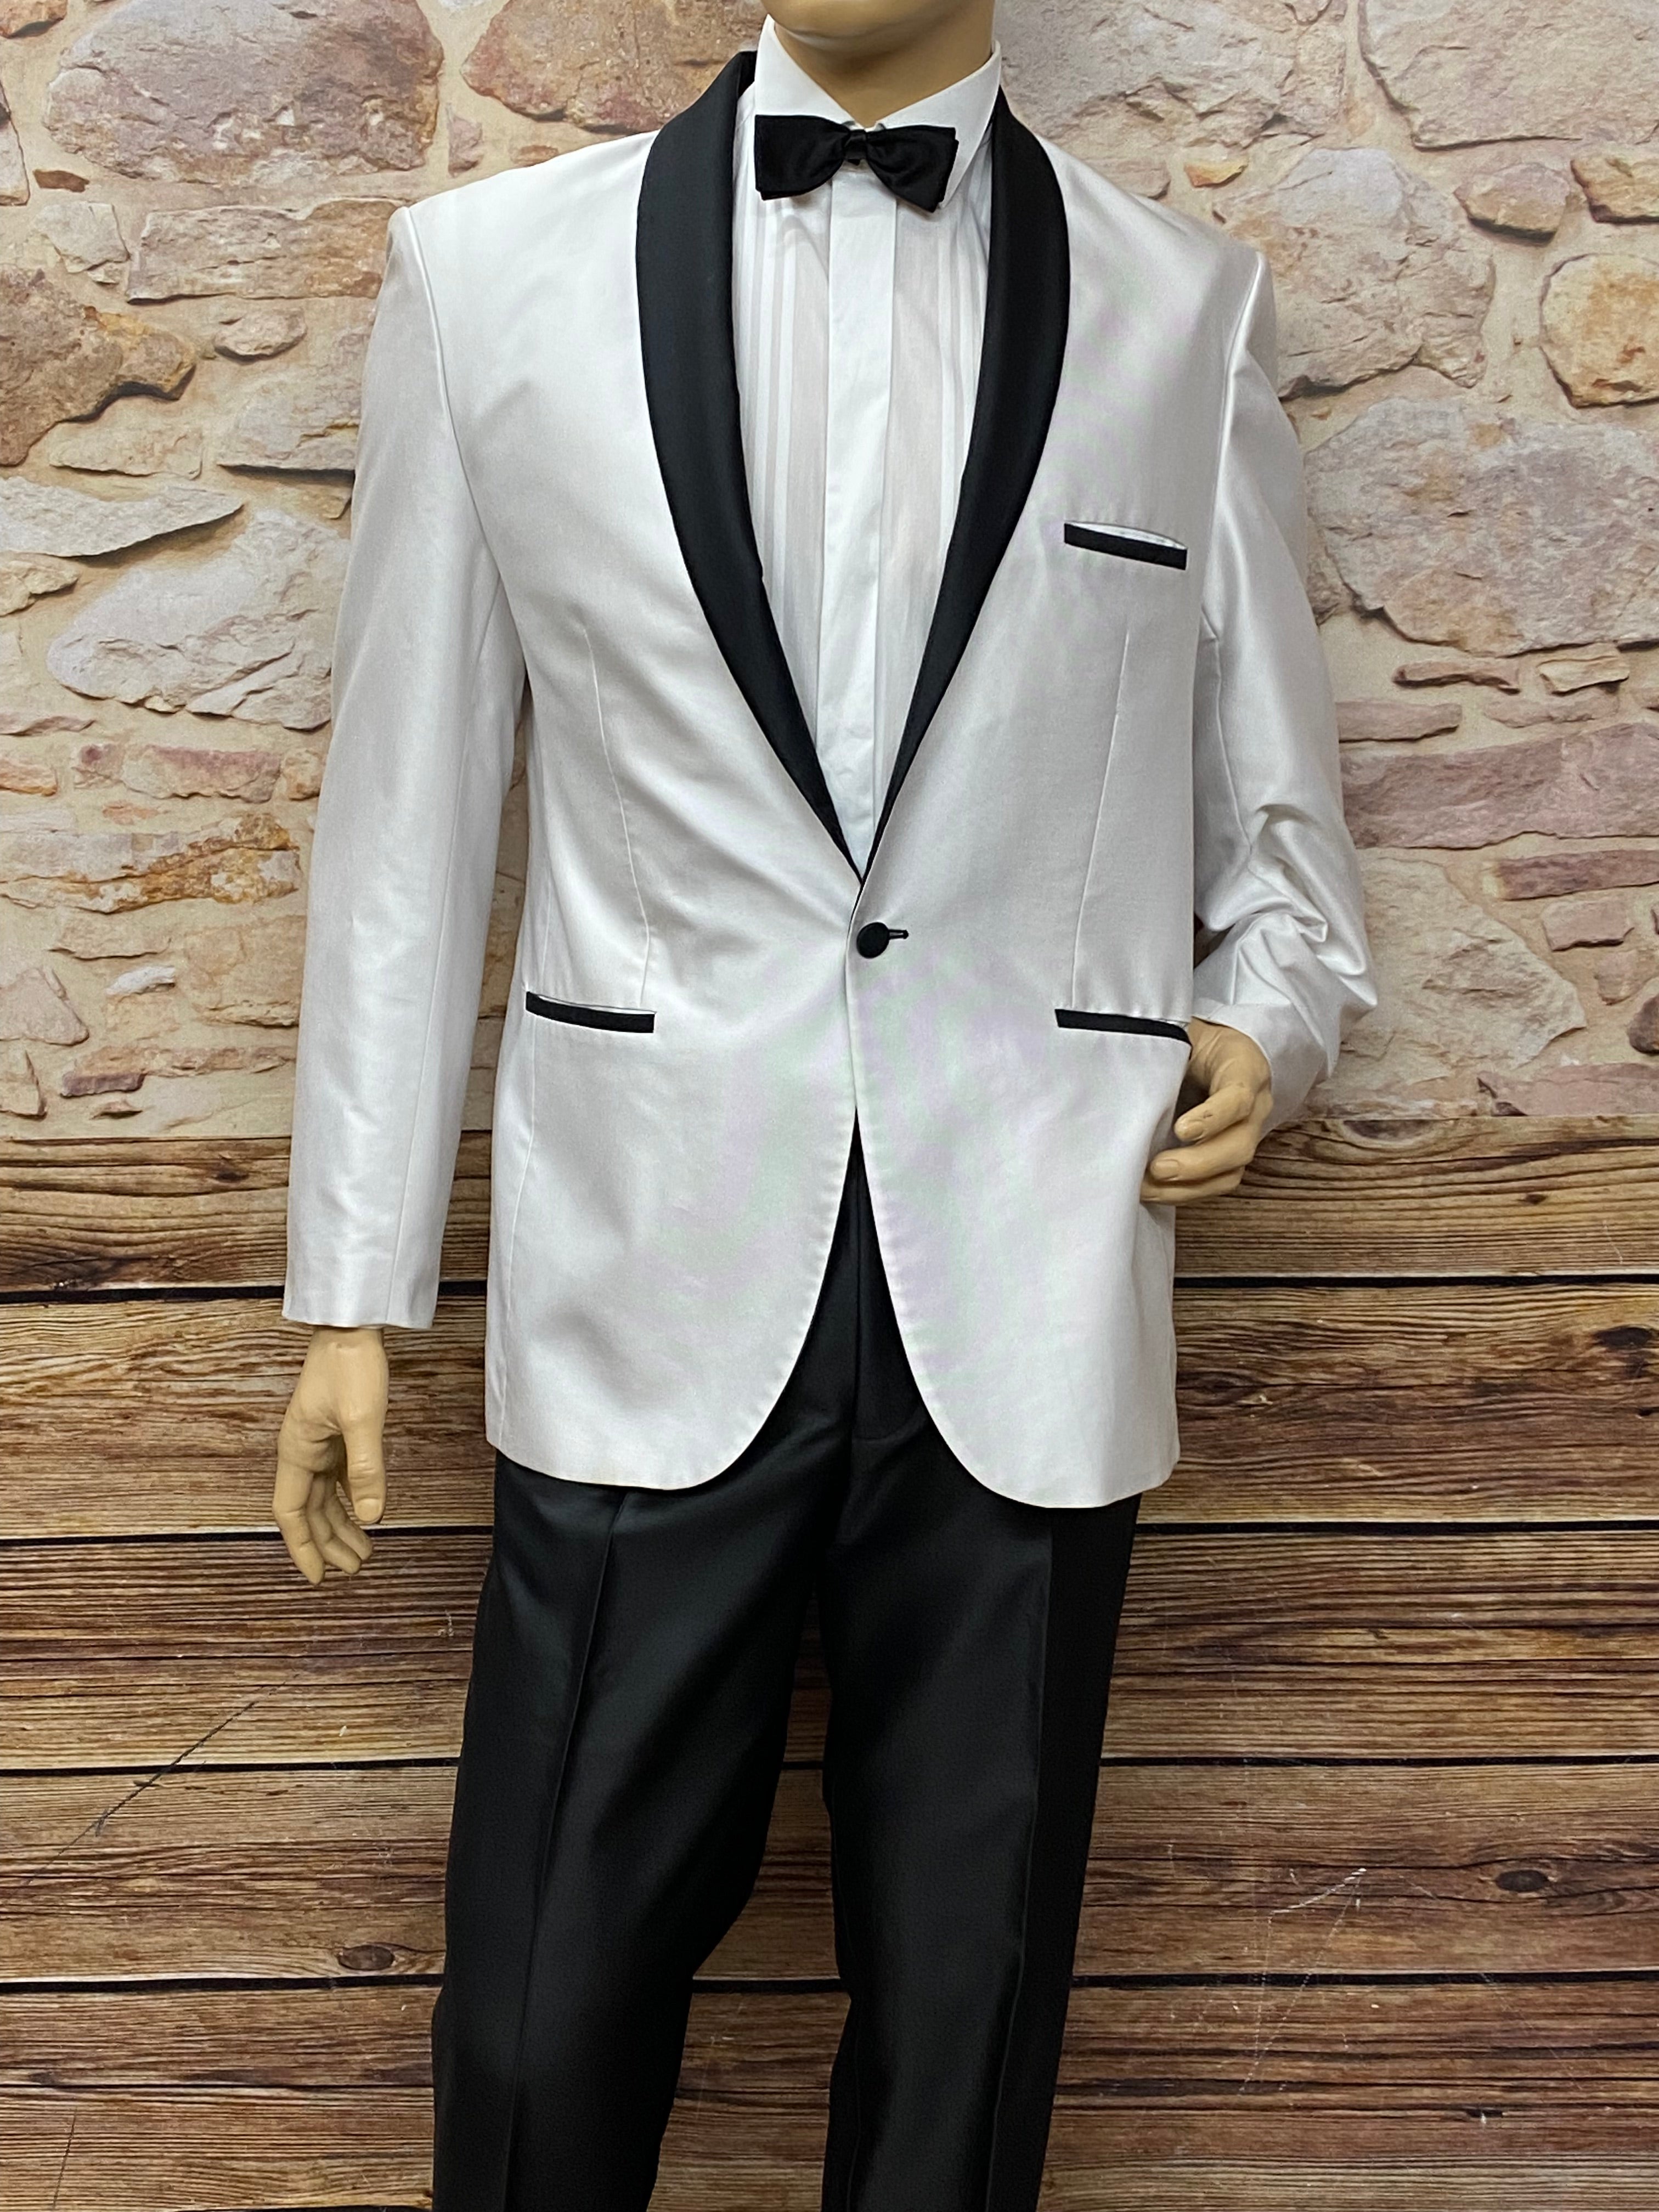 Schwarz Mottoparty Glad 5teilig, Anzug weißer Kostümverkauf Rags – Black Gr.50, White and